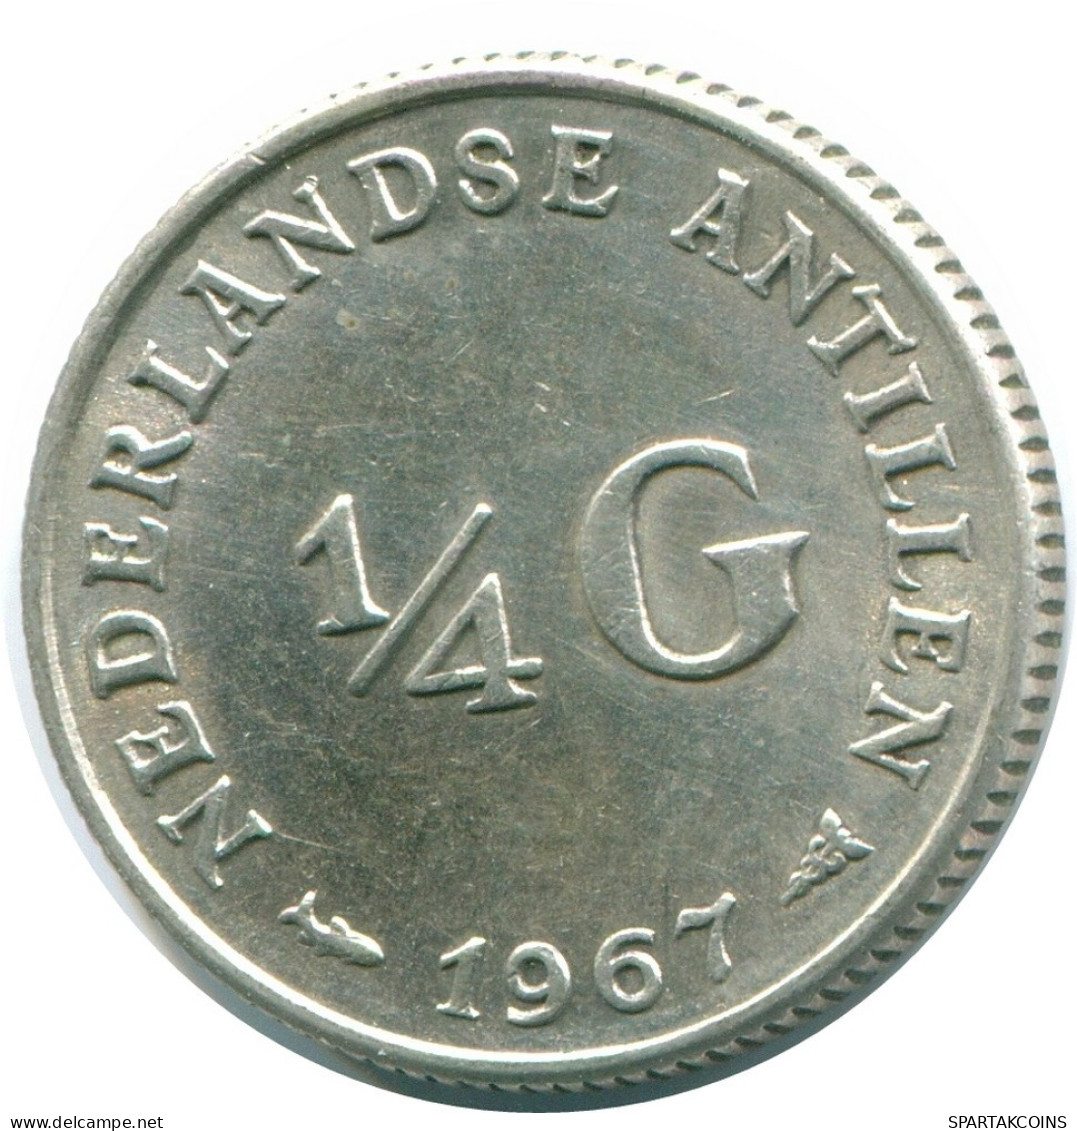 1/4 GULDEN 1967 NIEDERLÄNDISCHE ANTILLEN SILBER Koloniale Münze #NL11467.4.D.A - Antillas Neerlandesas